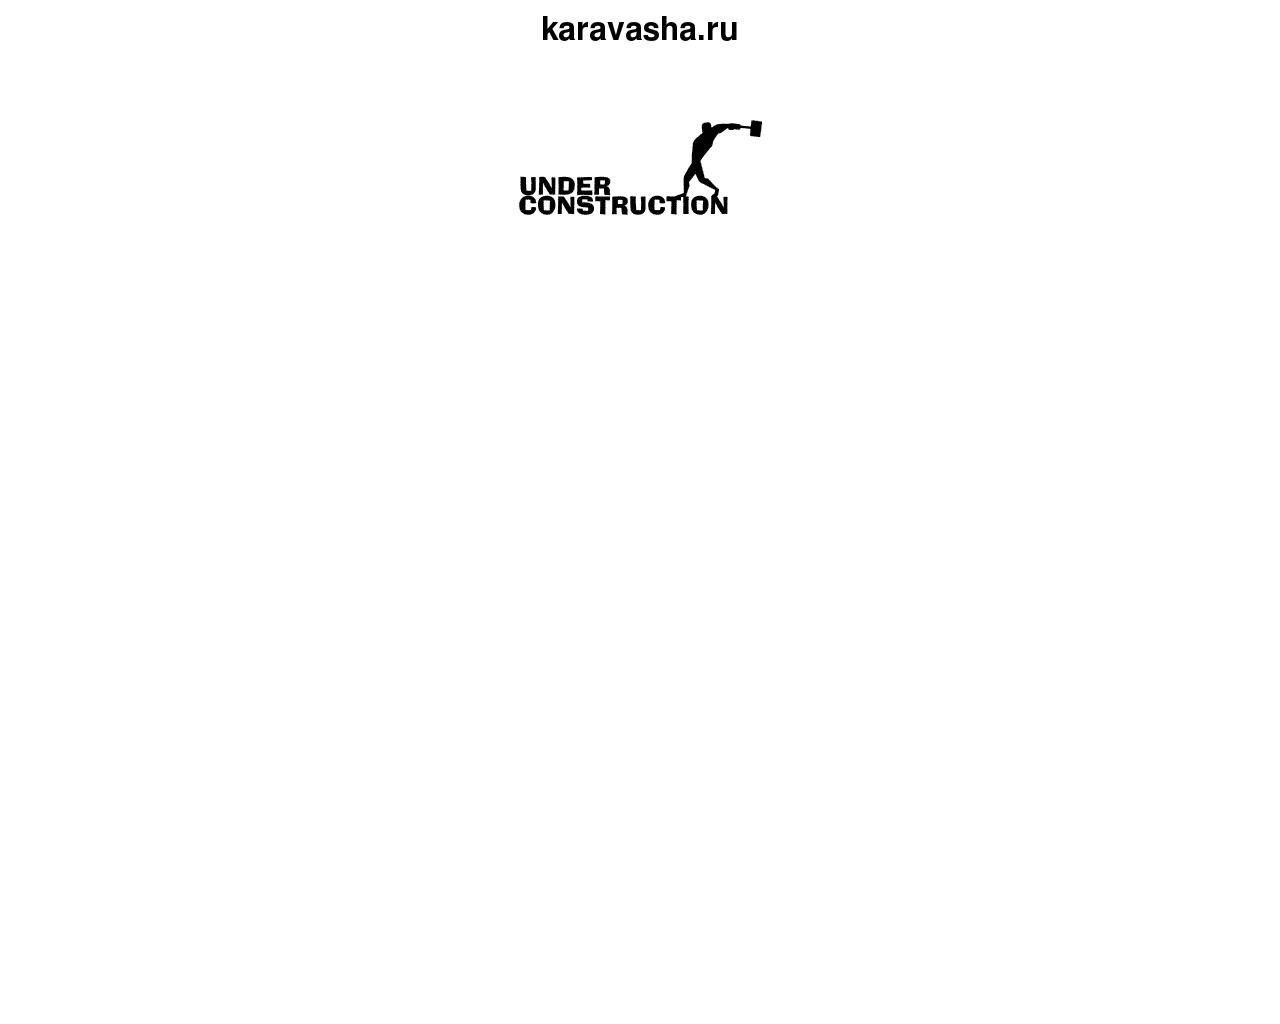 Изображение сайта karavasha.ru в разрешении 1280x1024